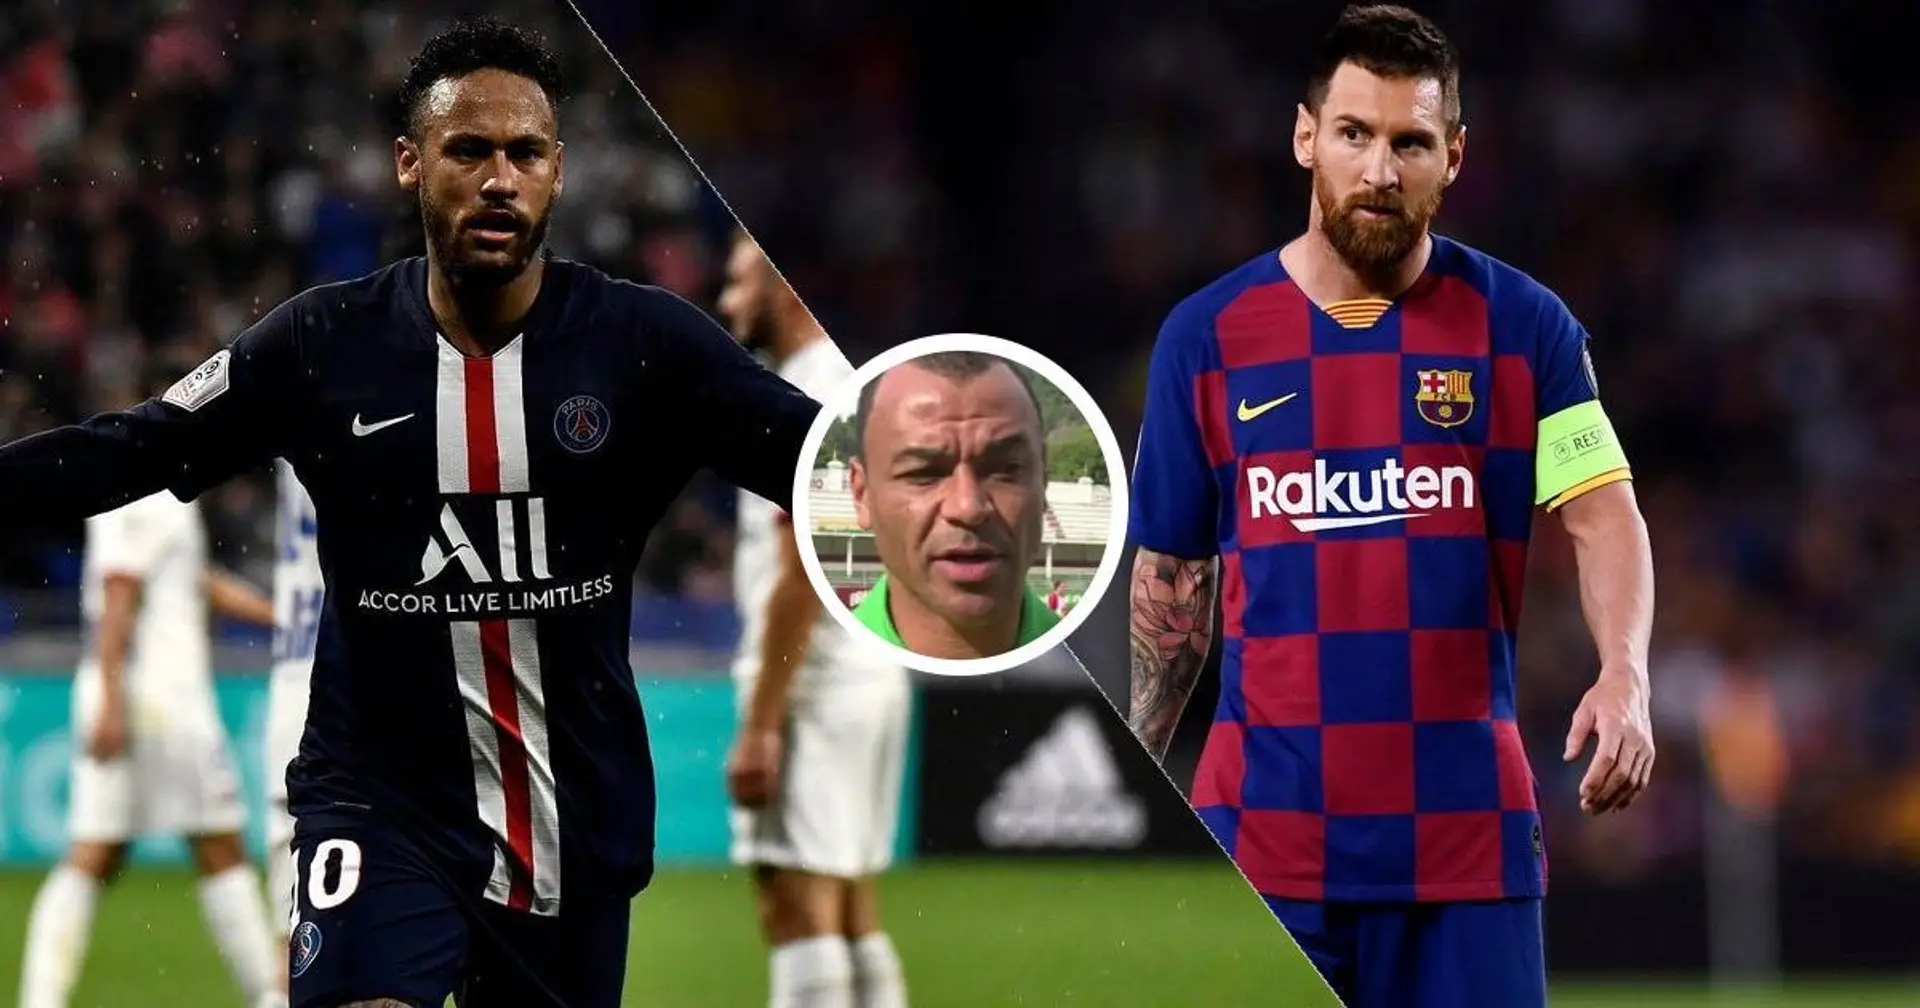 'Debe estar fumando algo': los fans del Barça están furiosos con Cafú por decir que Neymar es mejor que Messi